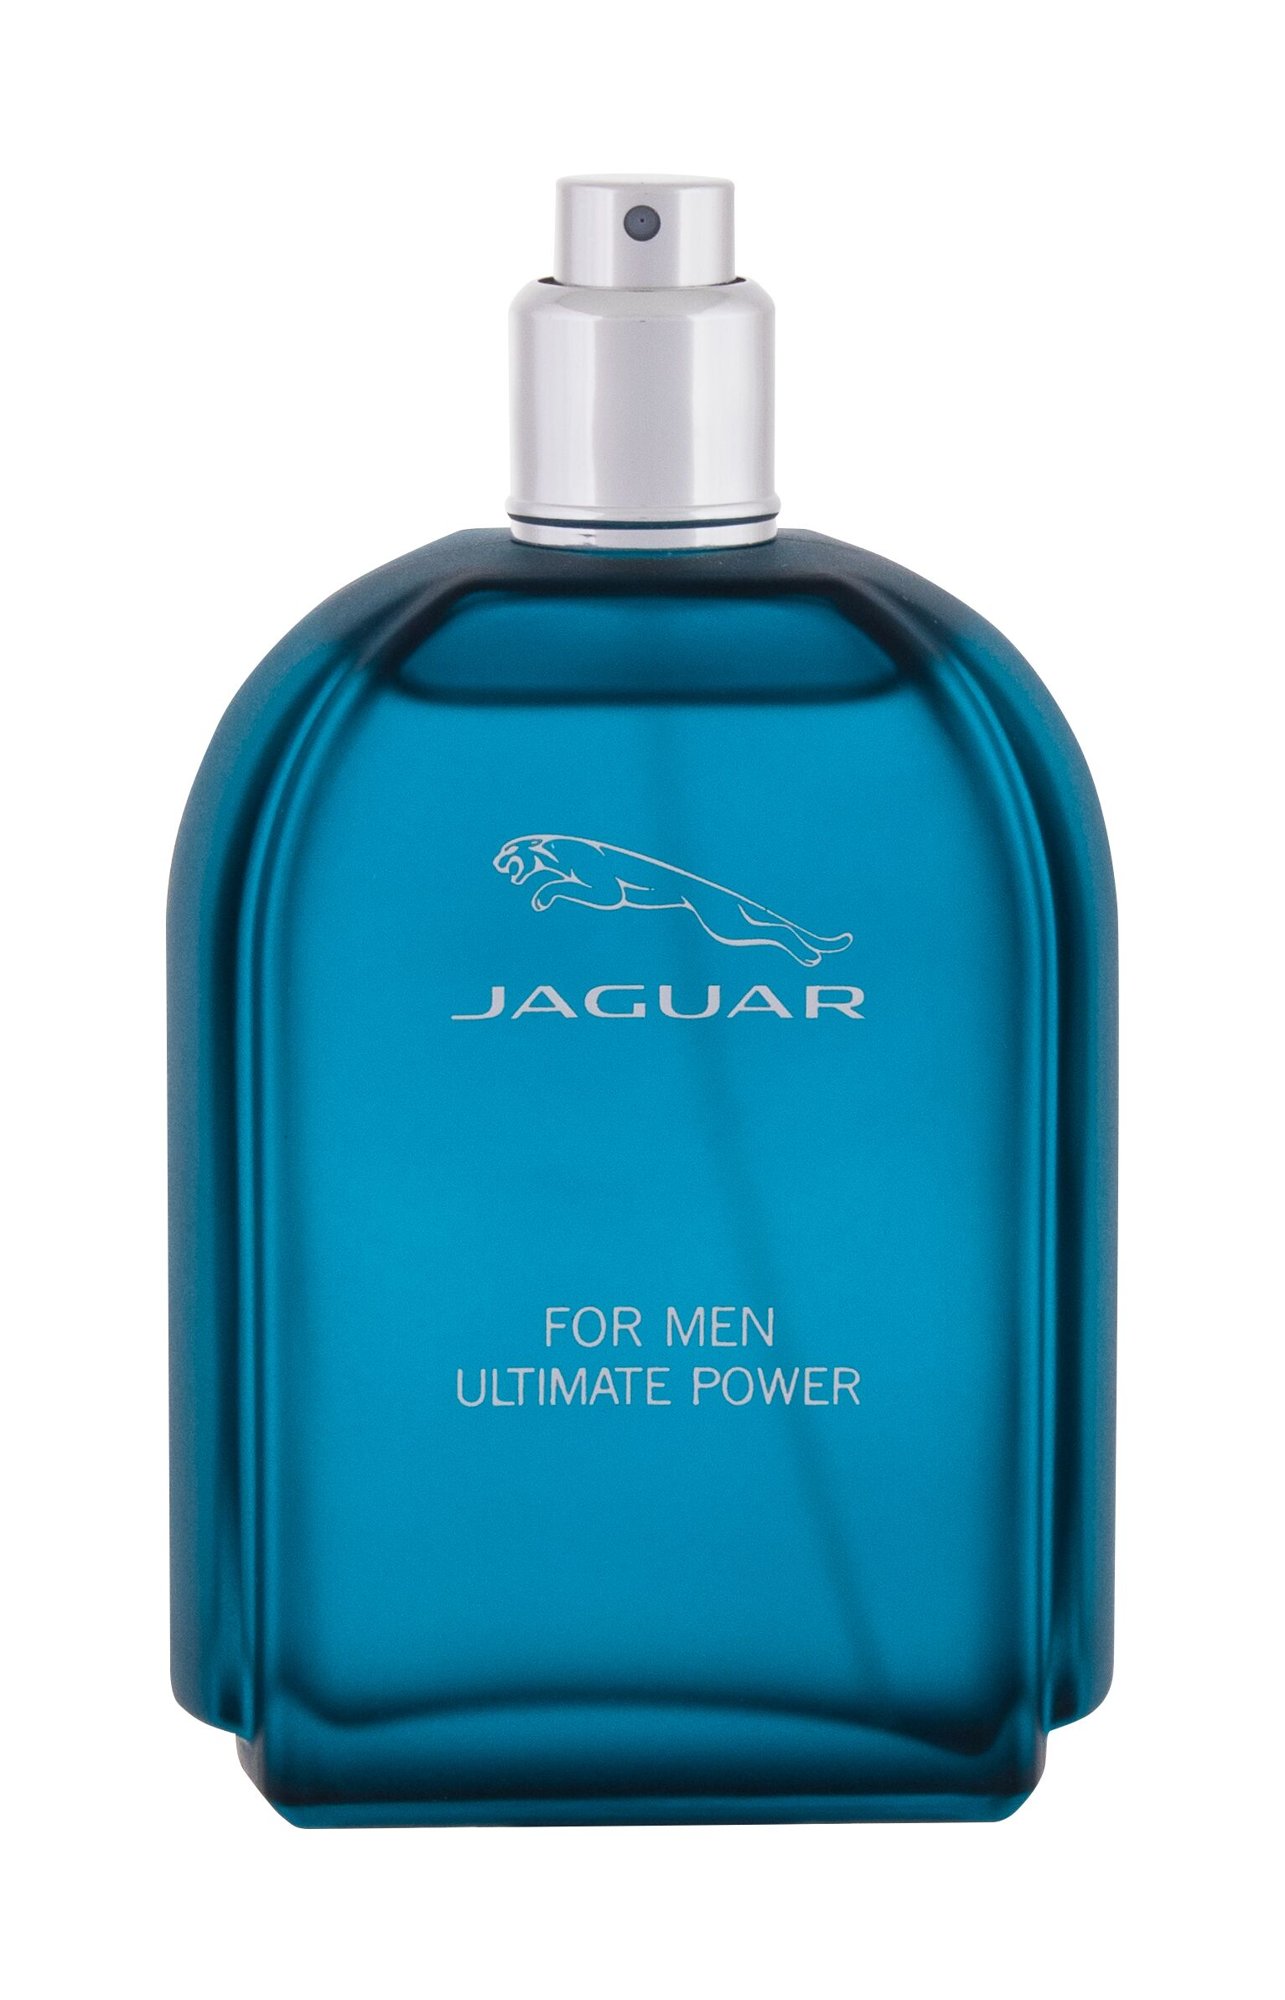 Jaguar For Men Ultimate Power, Toaletní voda 100ml - Tester